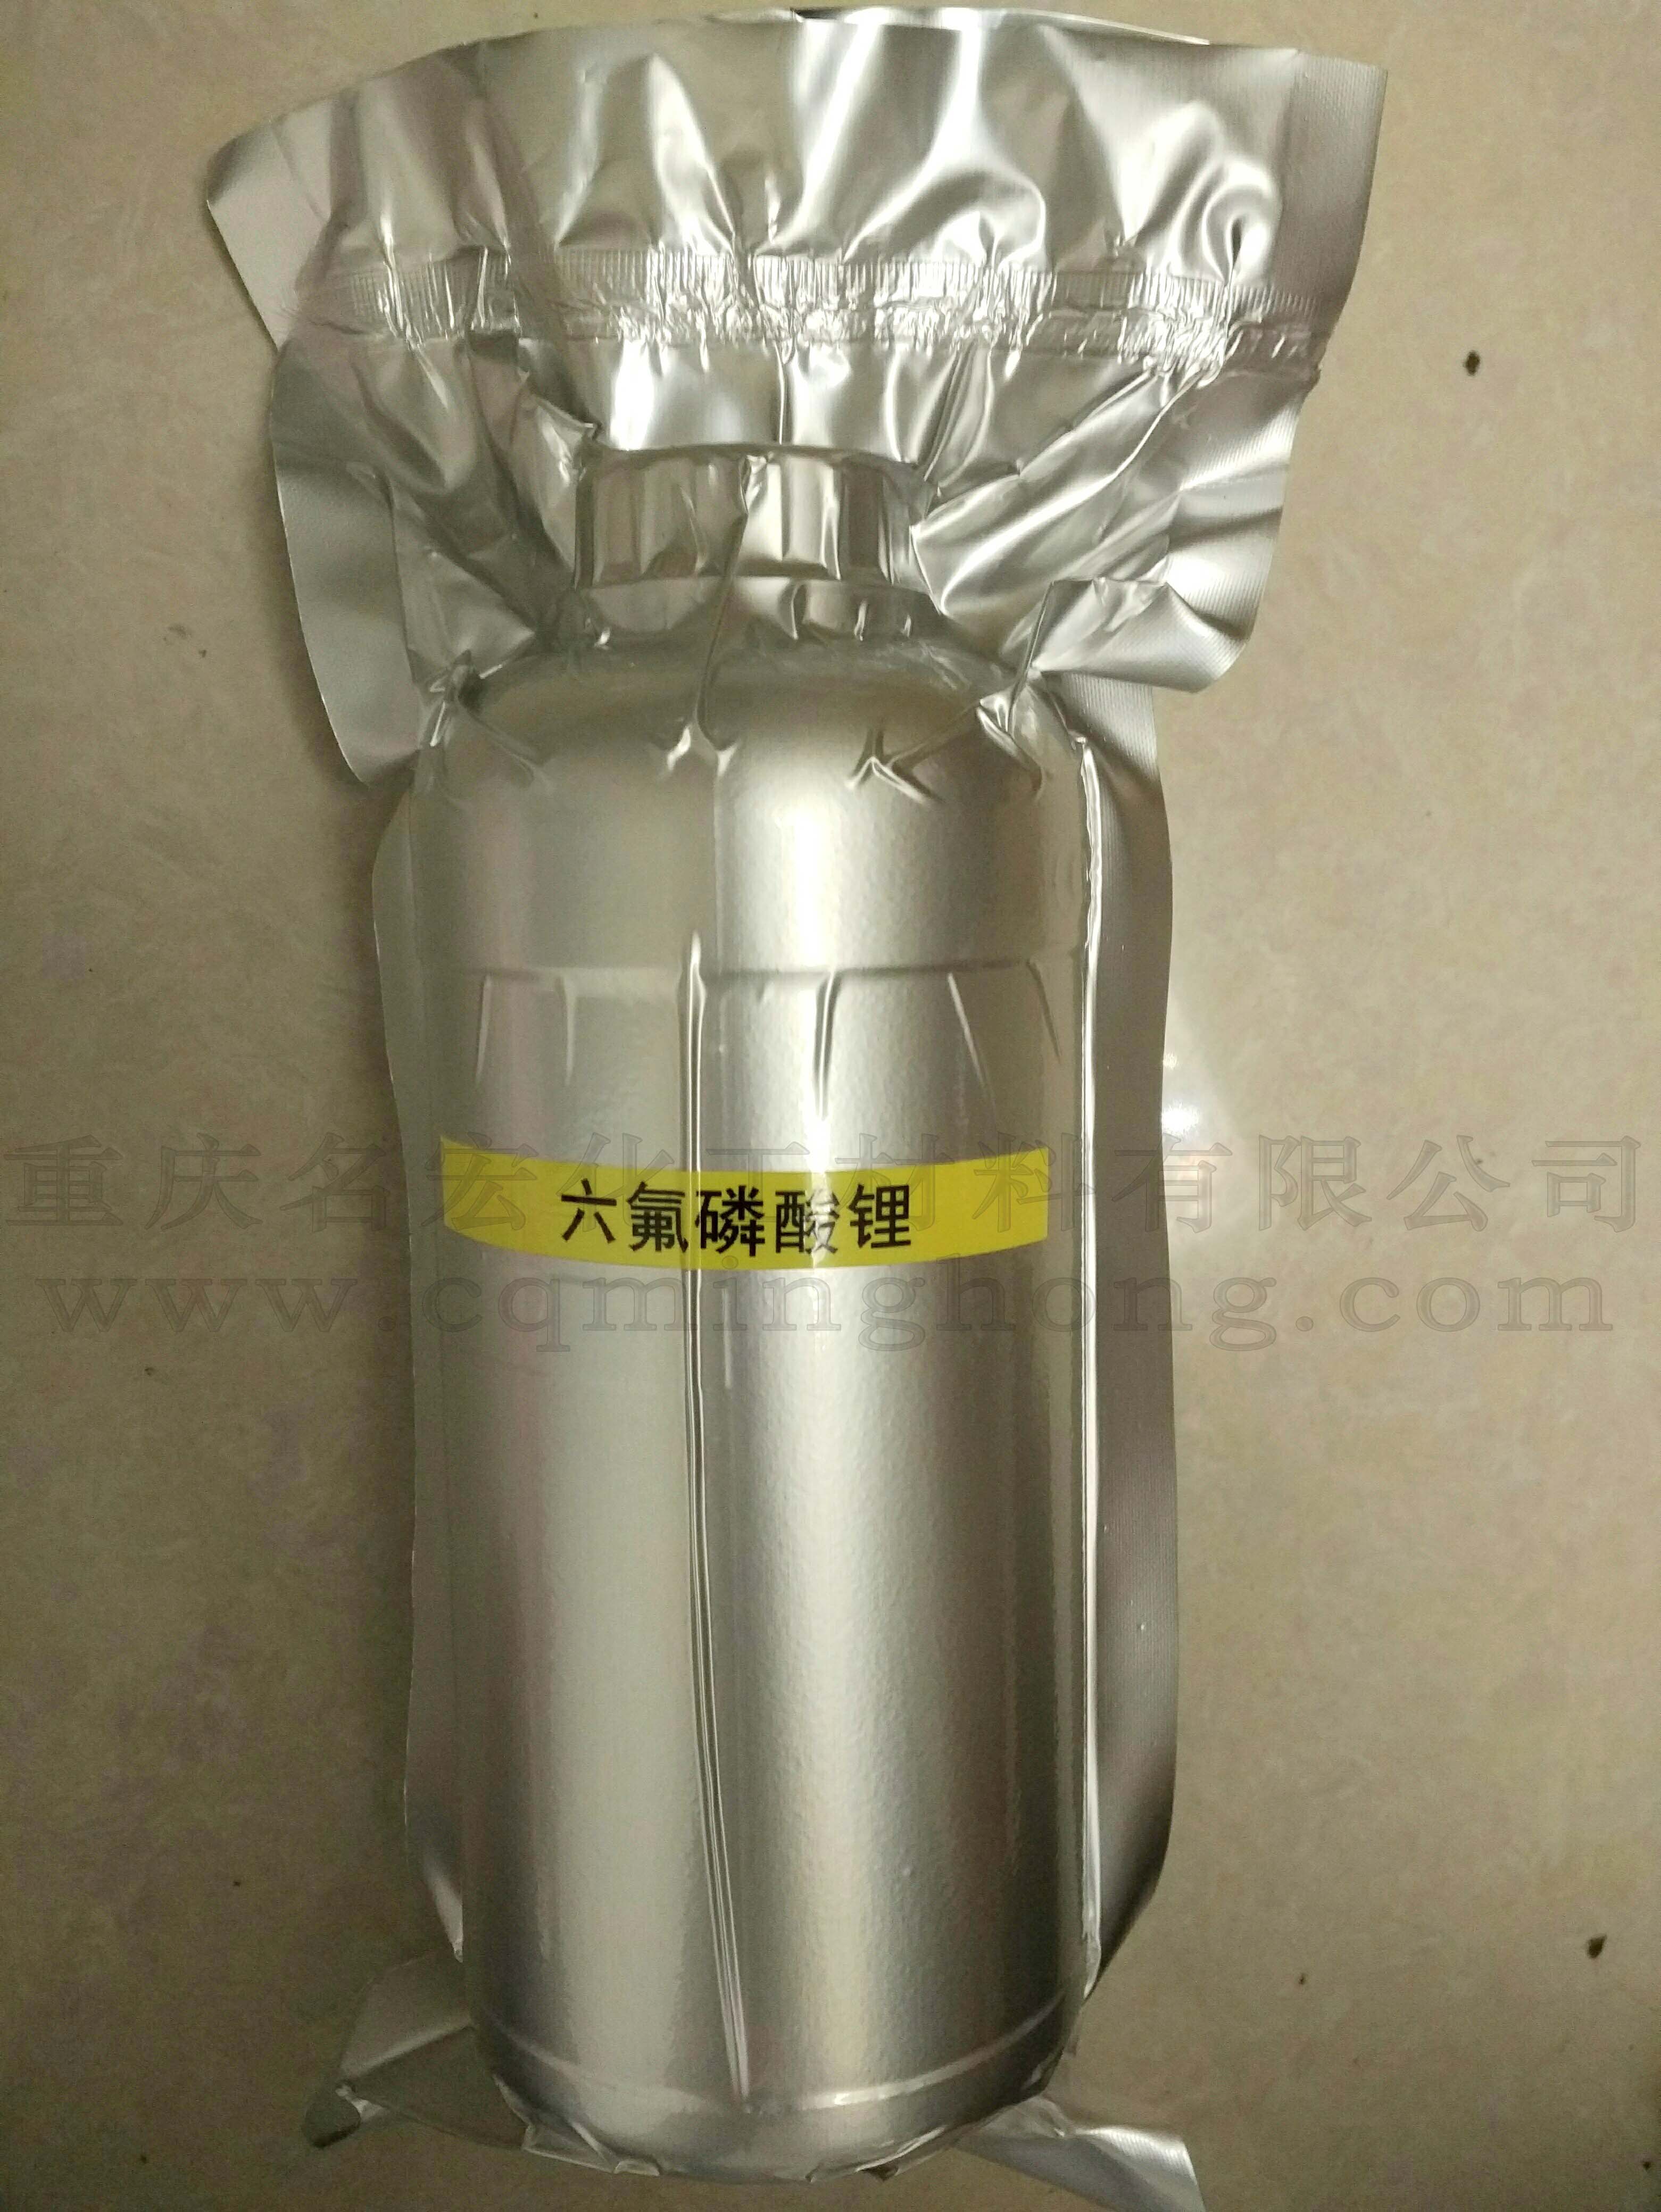 重庆四川贵州实验电子化学仪器分析试剂购买渠道